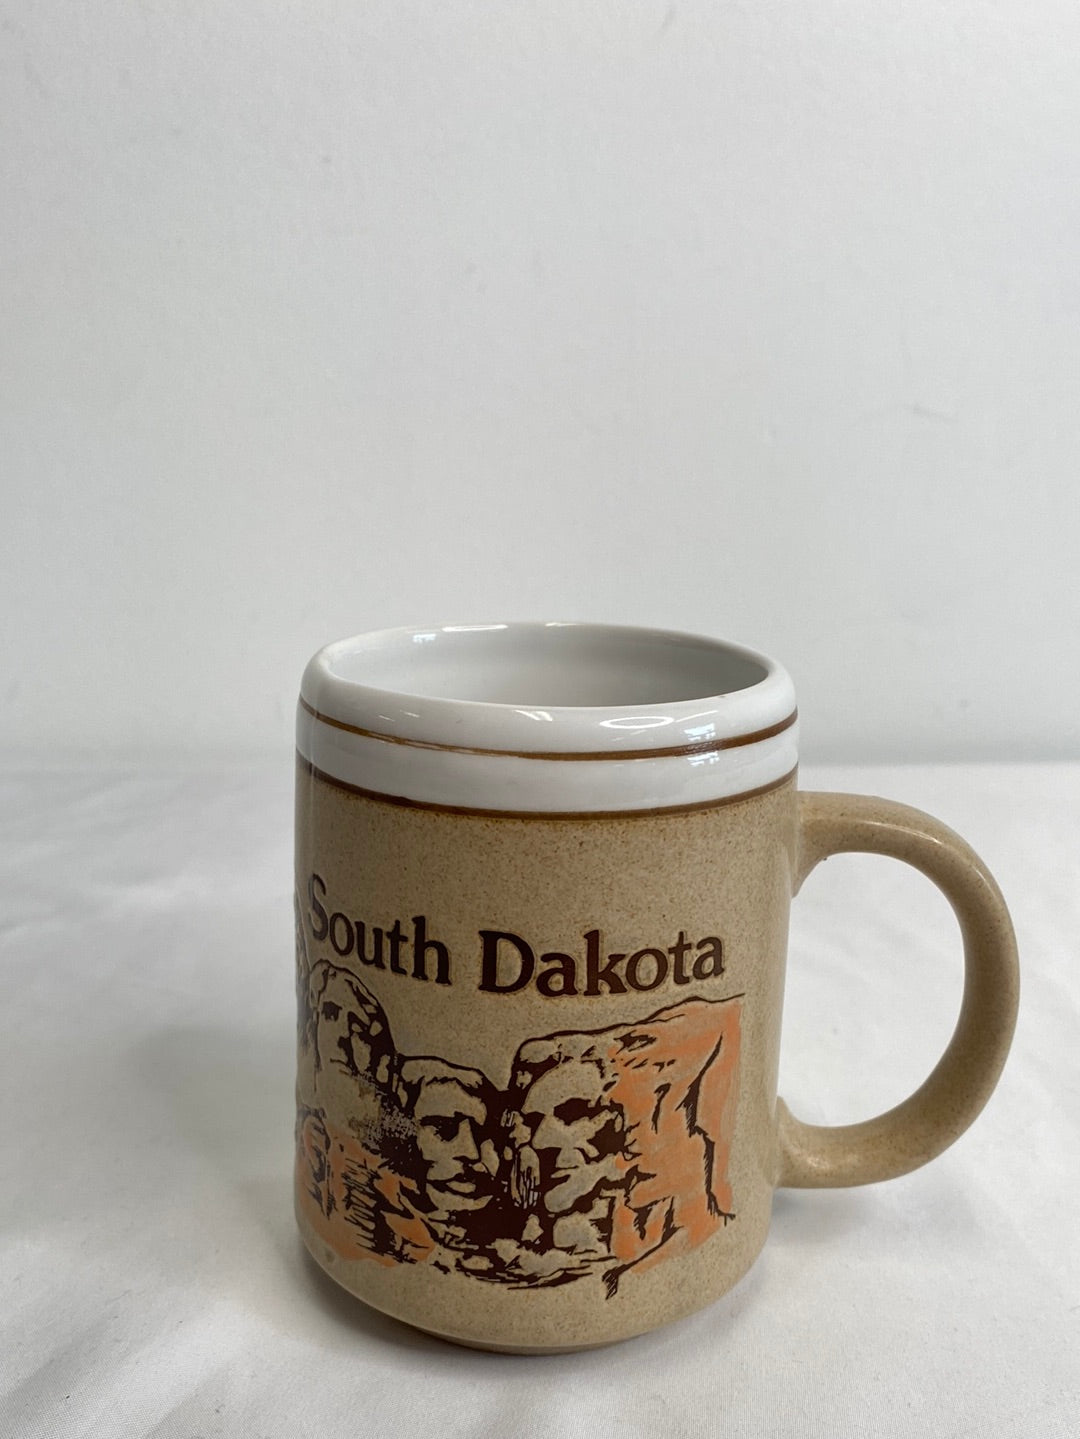 South Dakota Ceramic Mug